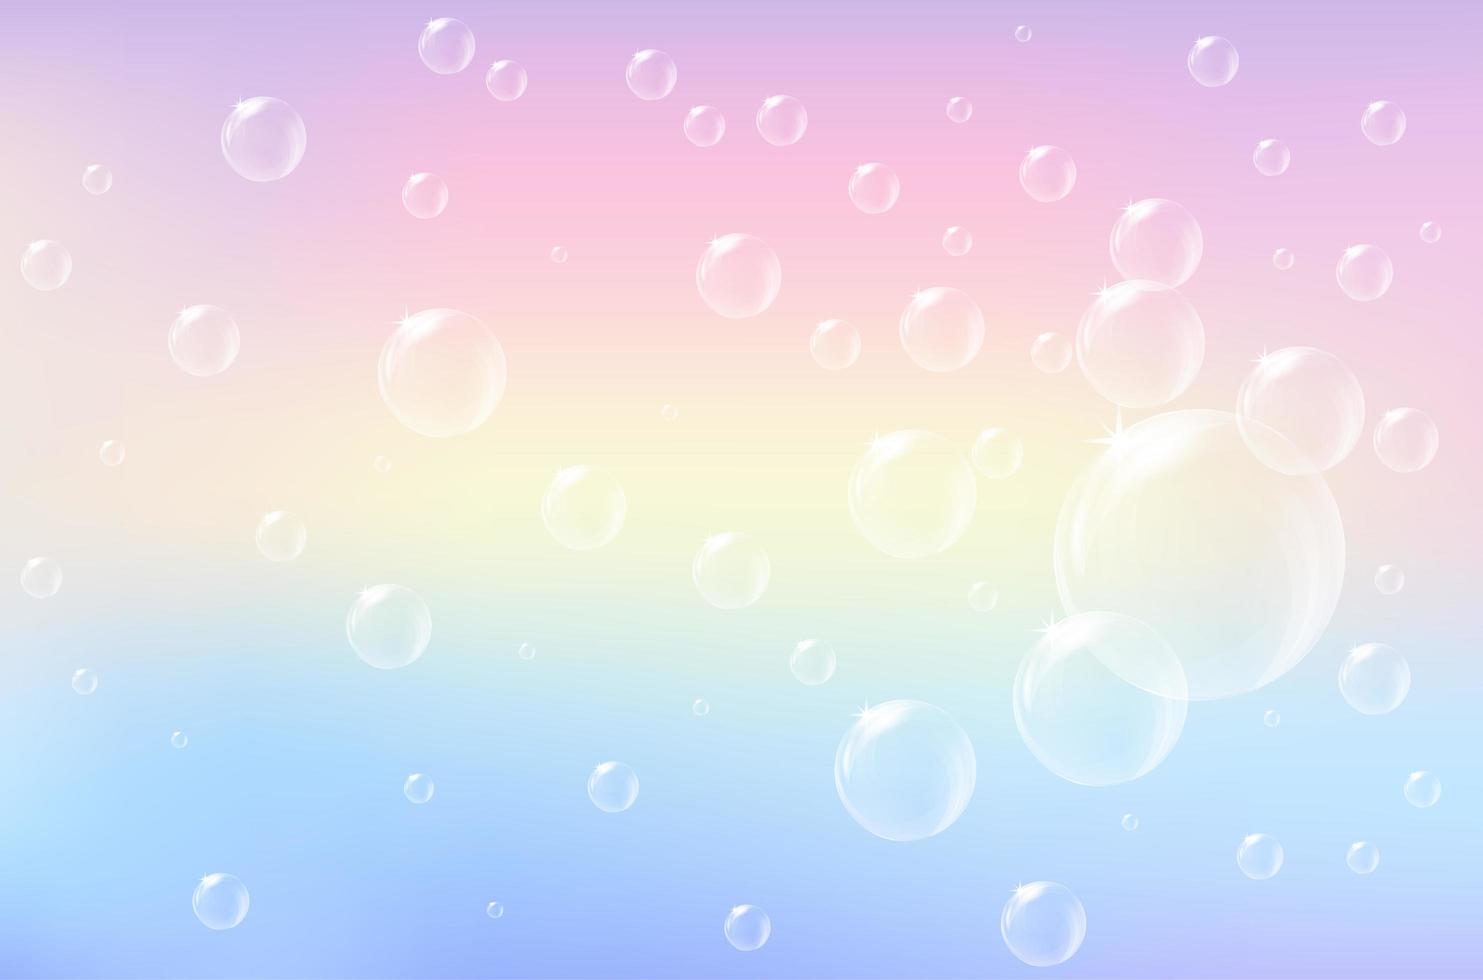 pastel arc-en-ciel flou avec fond de bulle vecteur